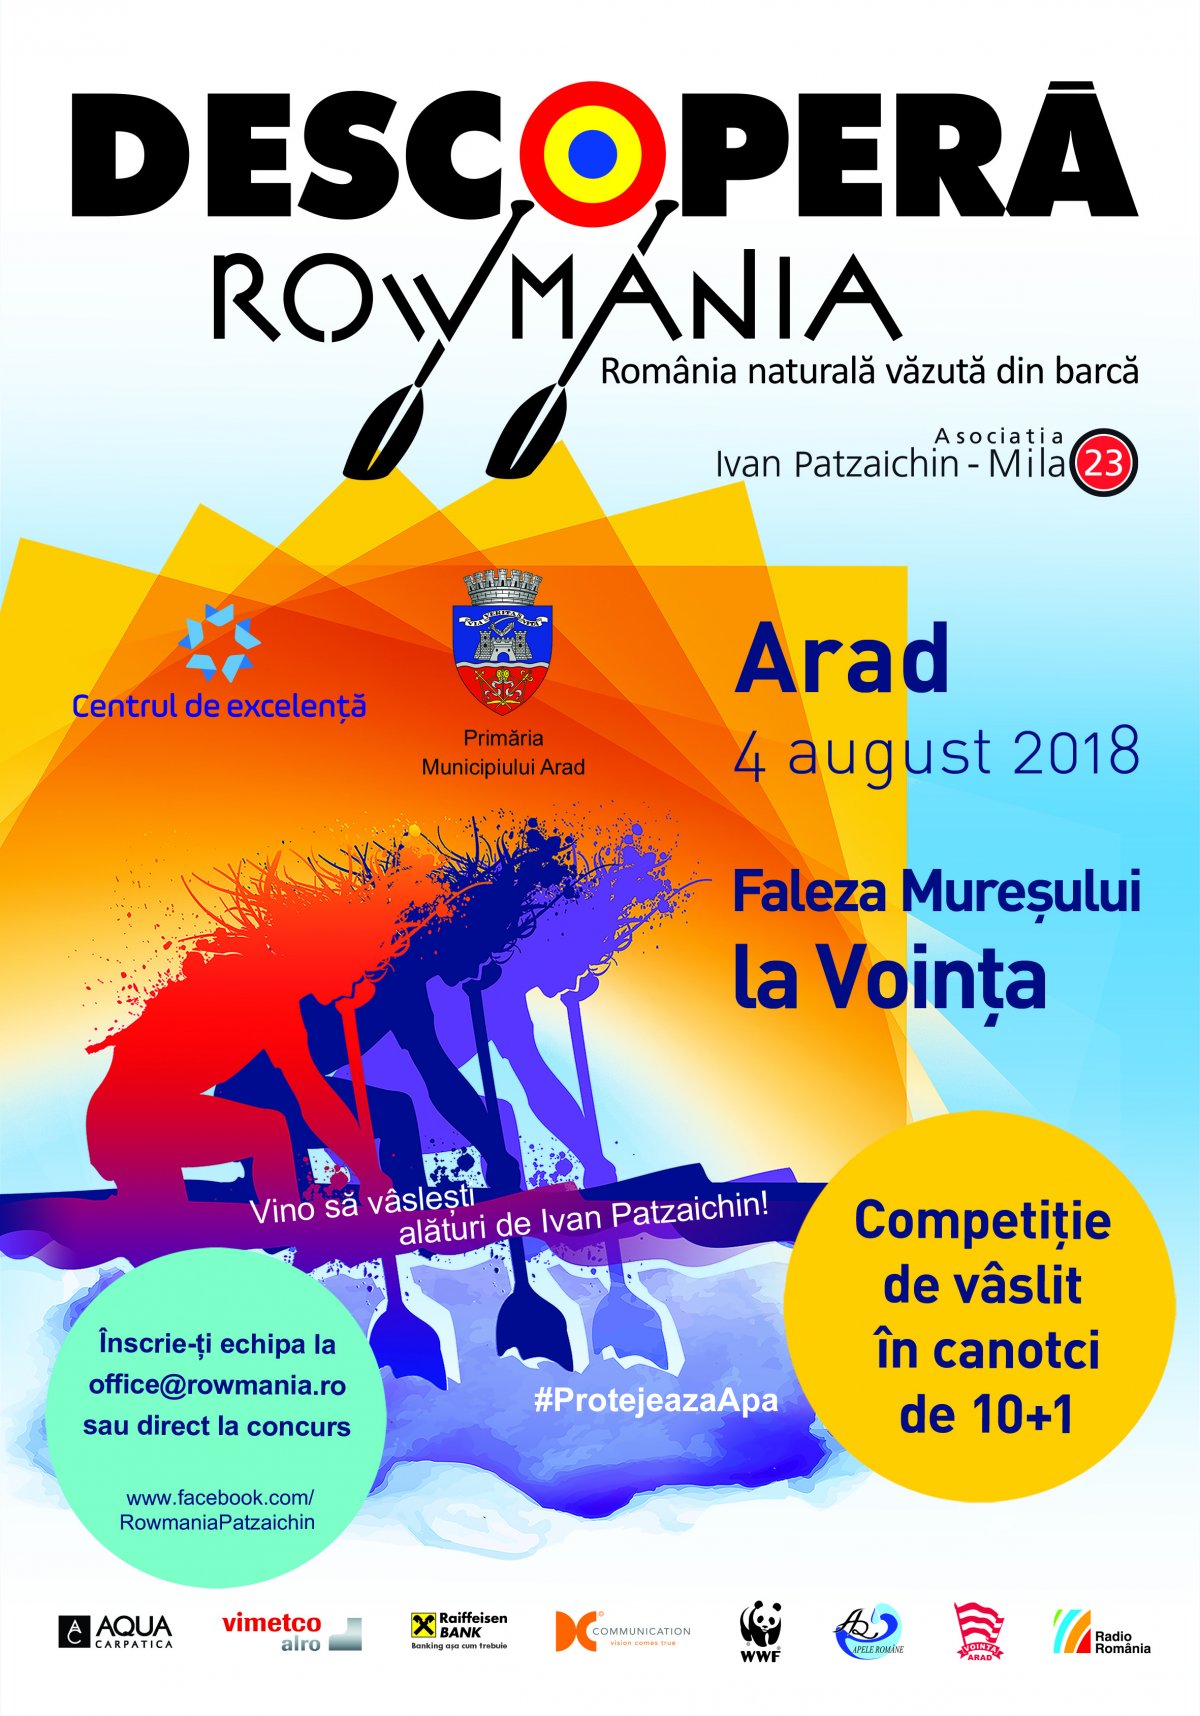 Descoperă Rowmania revine la Arad